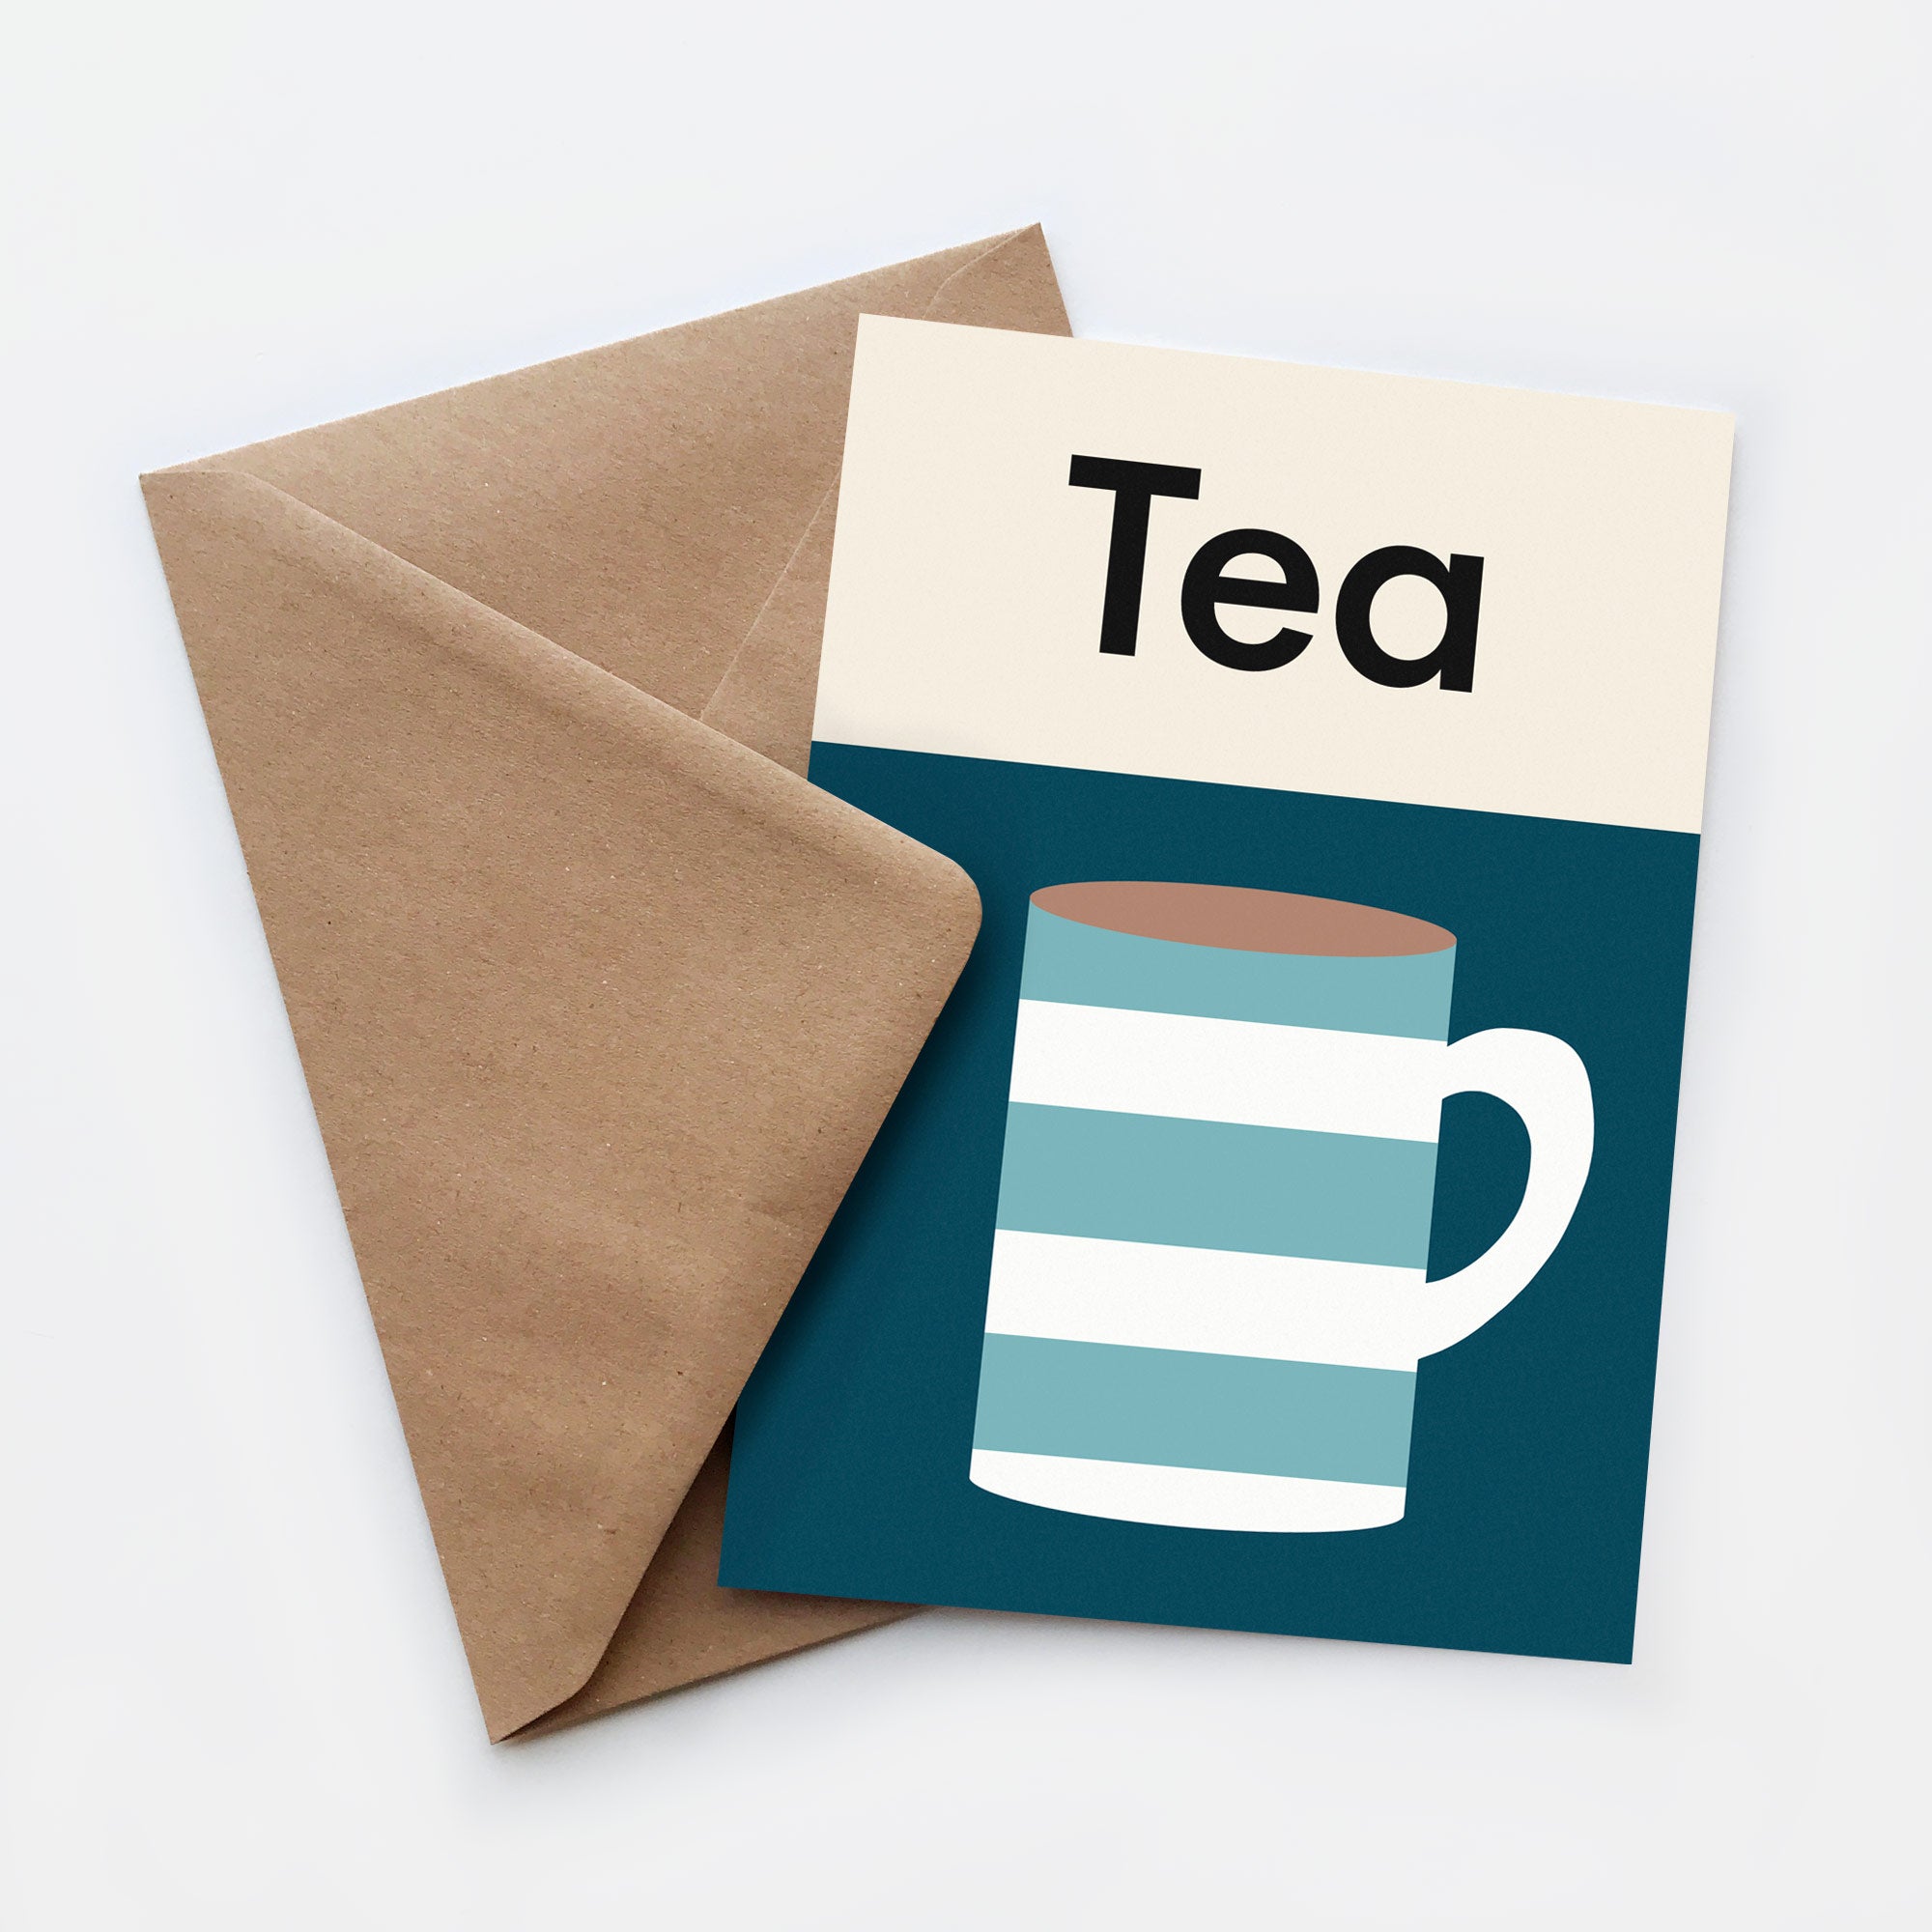 Tea card